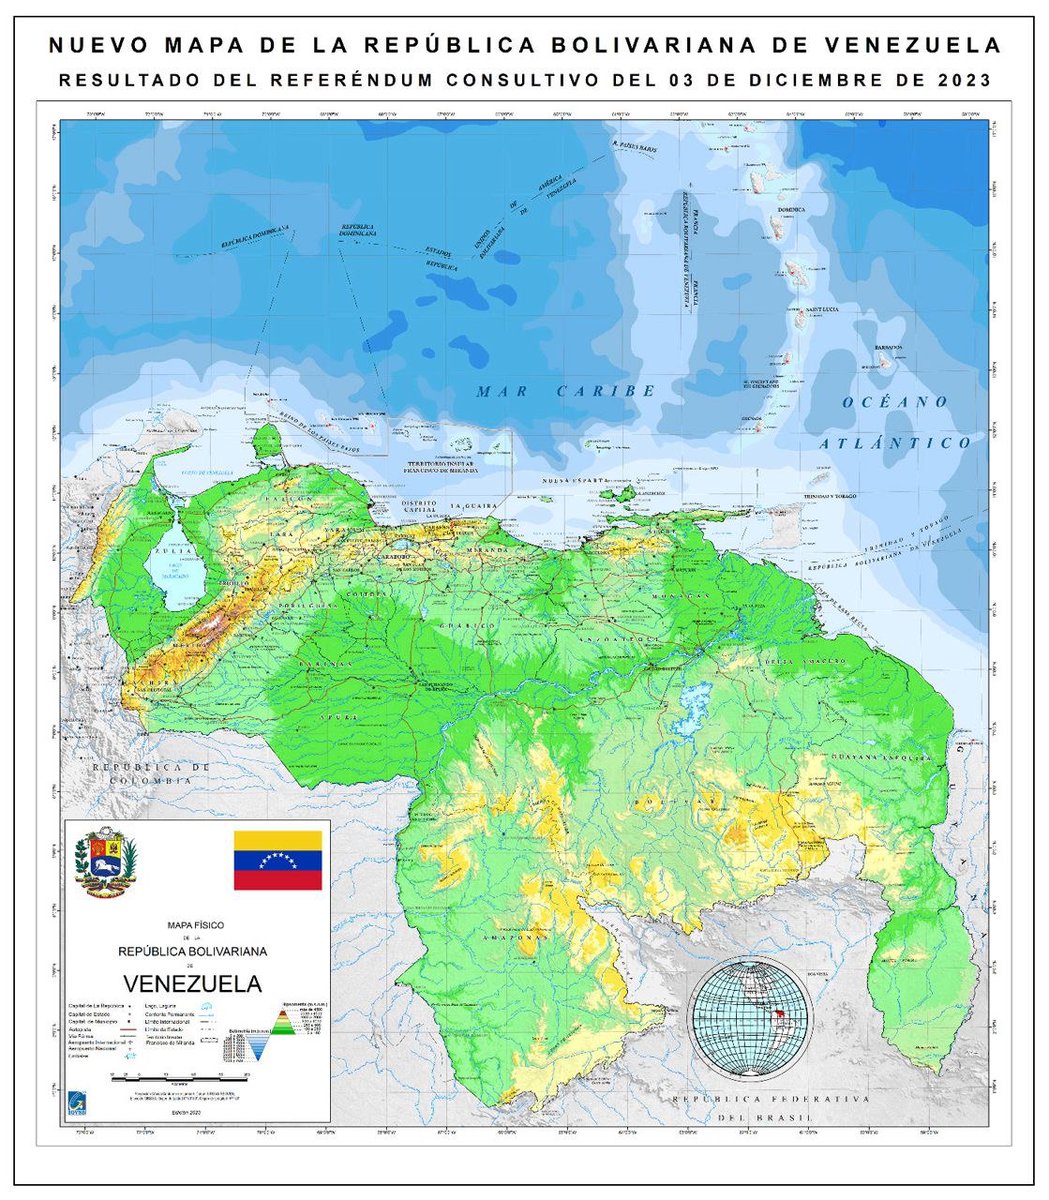 Ordené de manera inmediata publicar y a llevar a todas las escuelas, liceos, Consejos Comunales, establecimientos públicos, universidades y en todos los hogares del país el nuevo Mapa de Venezuela con nuestra Guayana Esequiba. ¡Este es nuestro mapa amado!